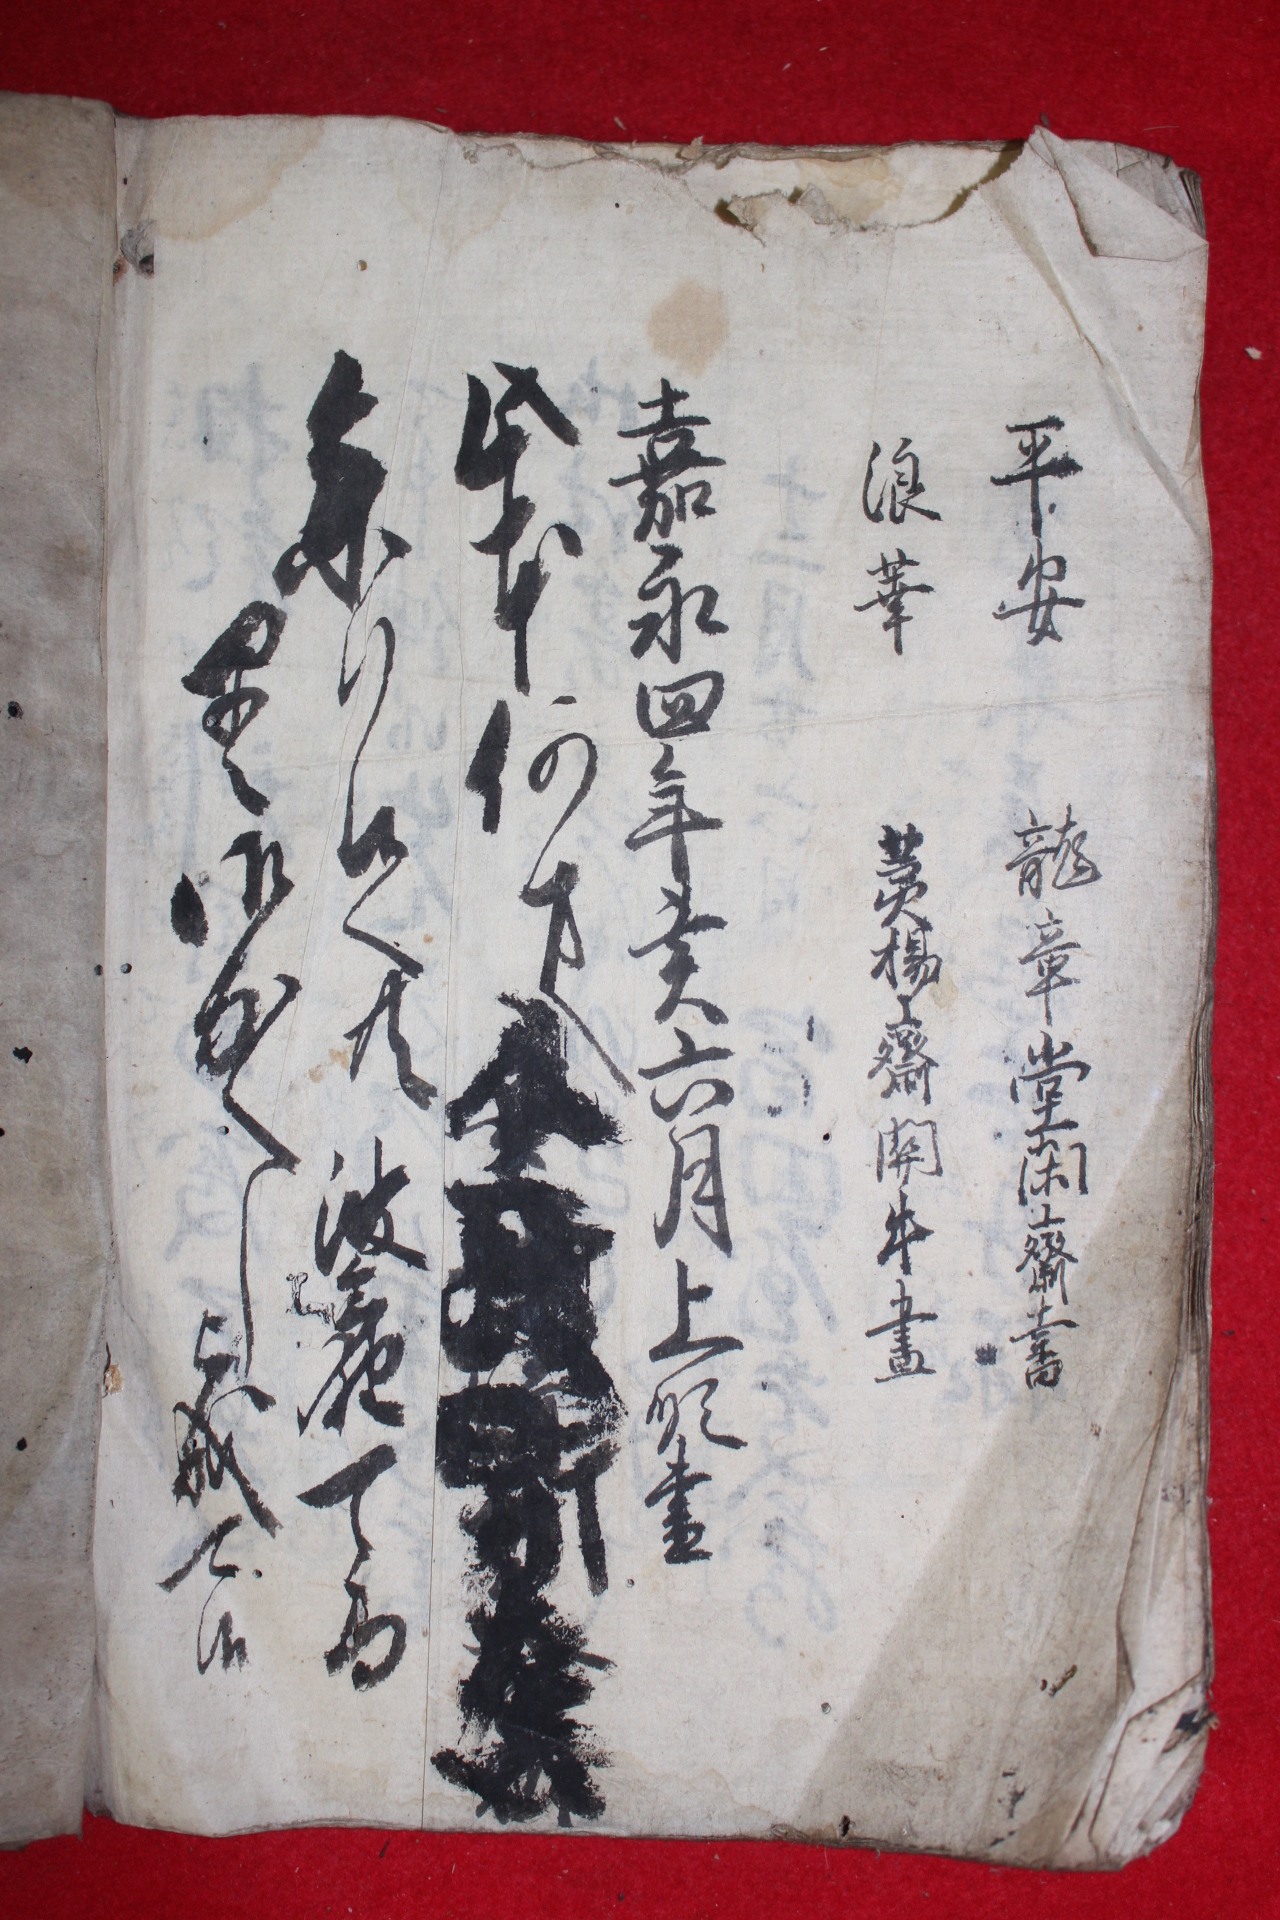 1851년(嘉永4年) 필사본 1책